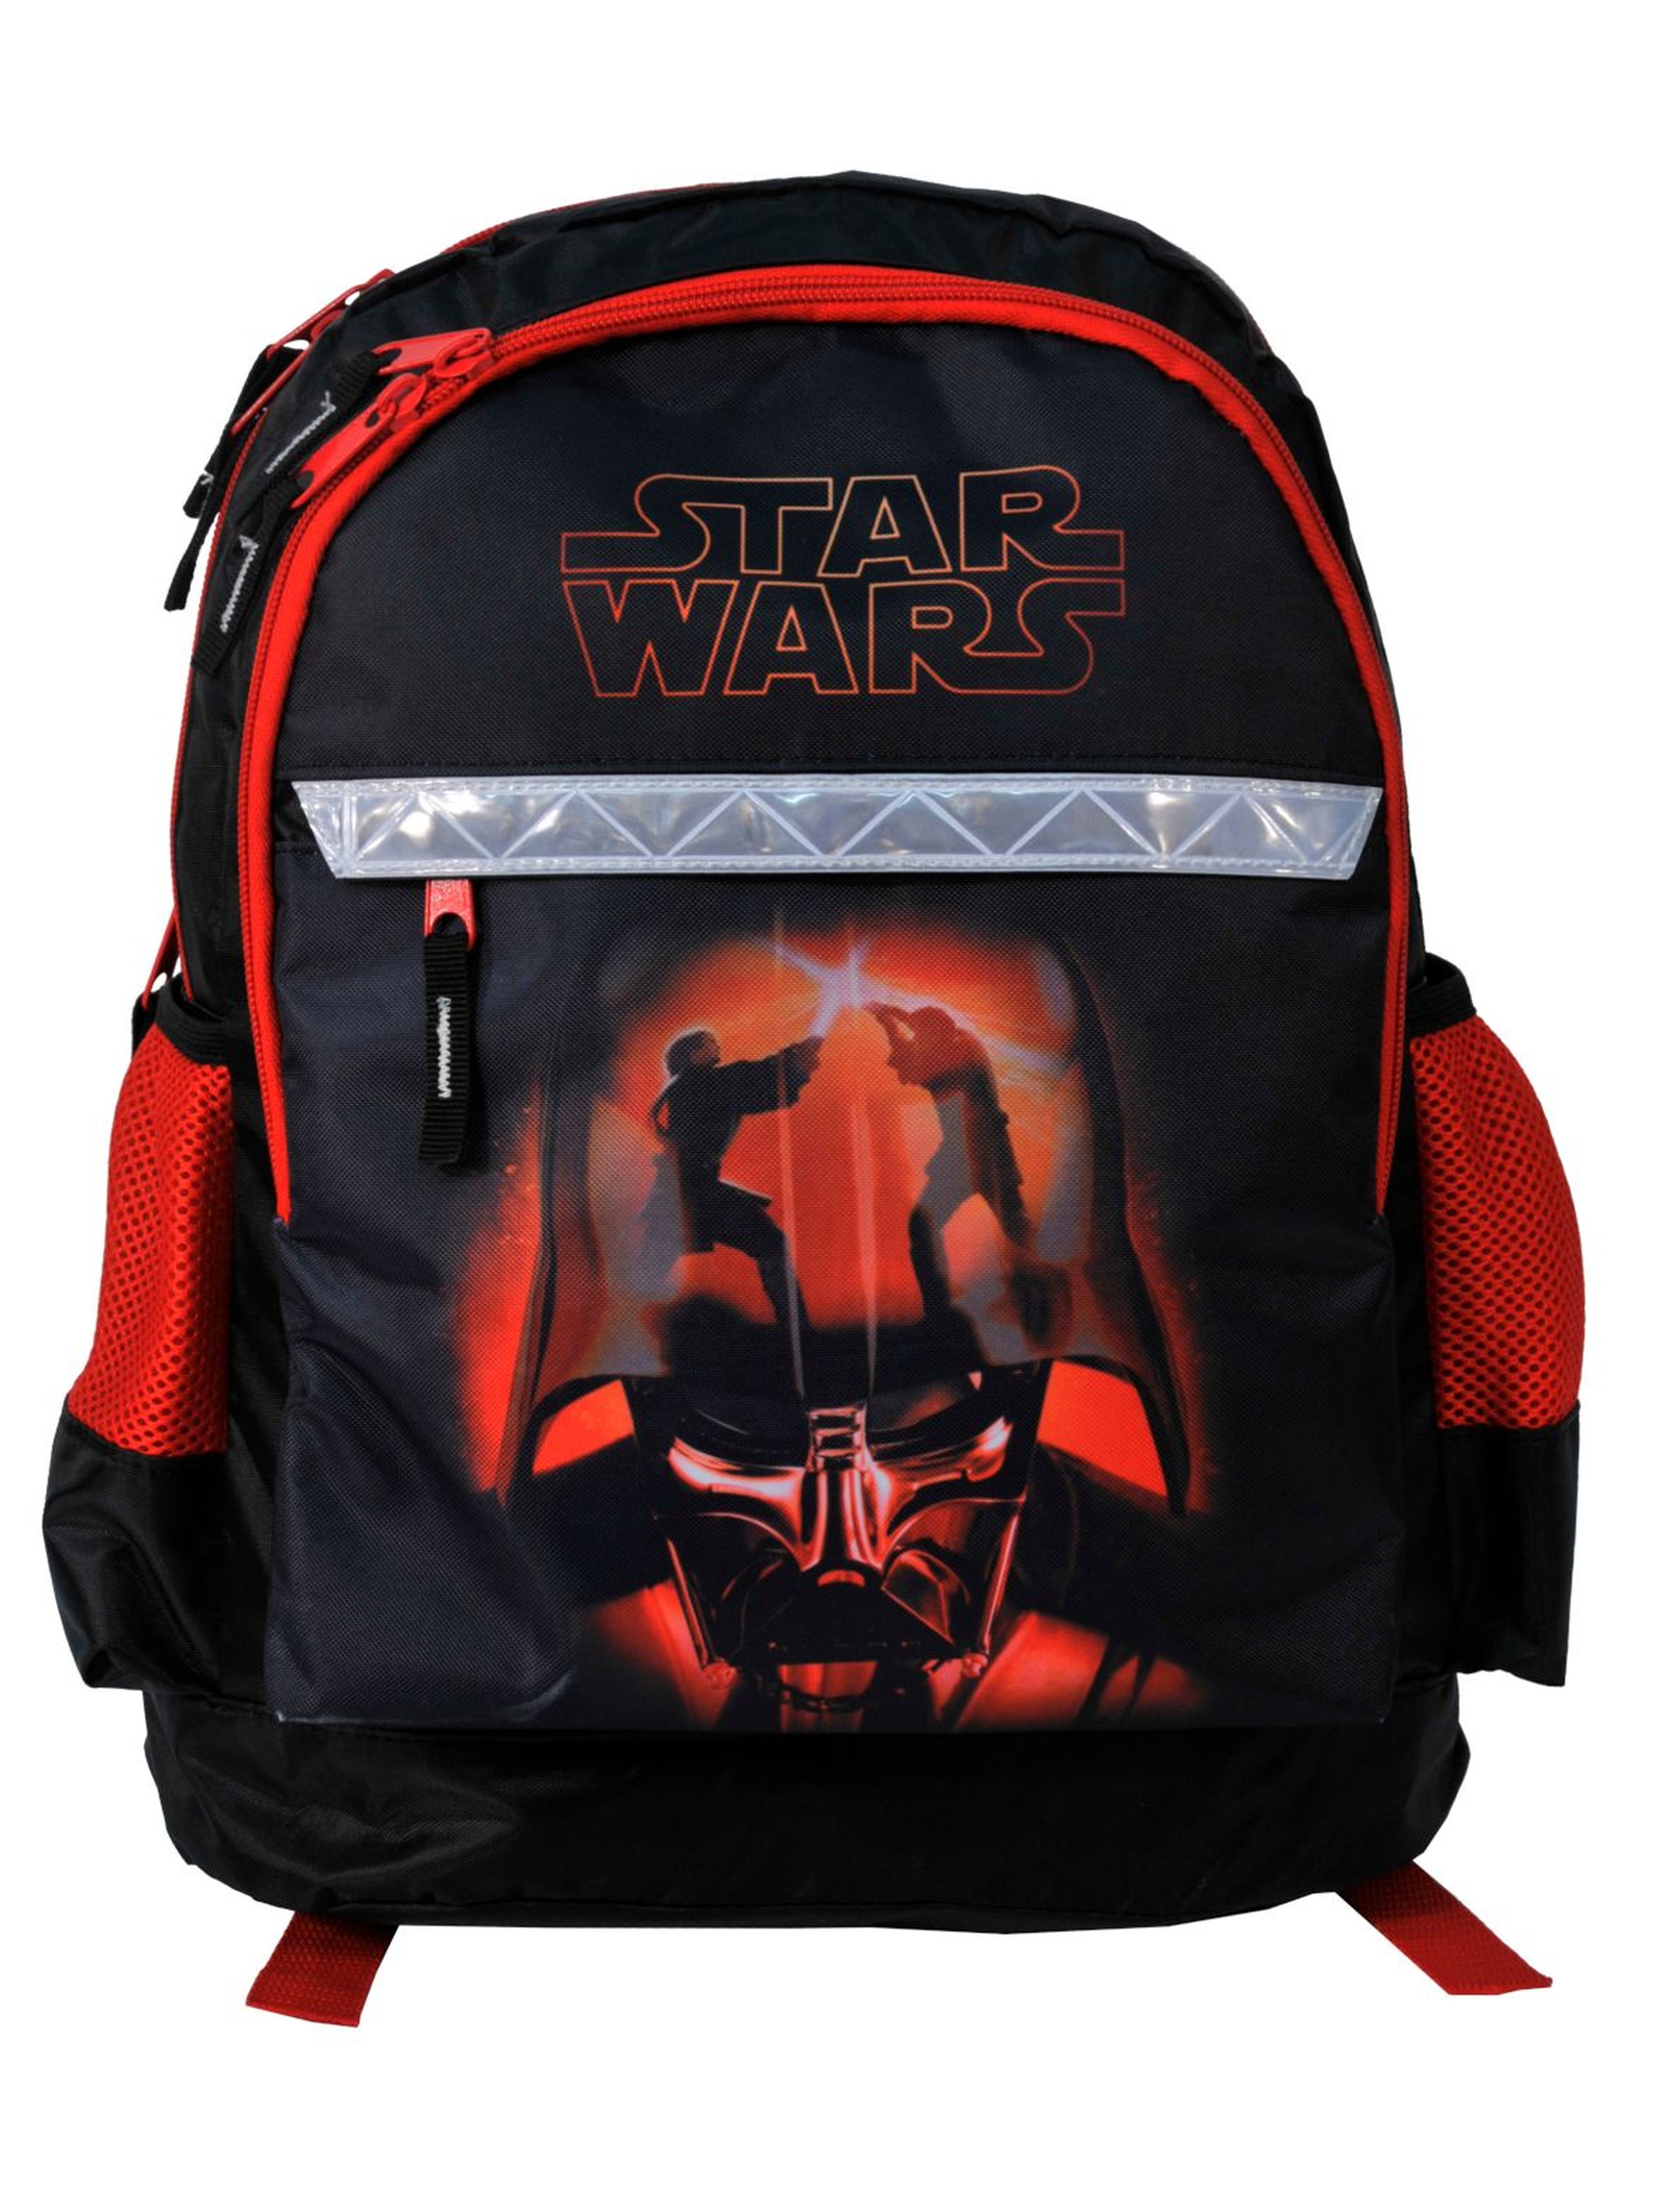 Plecak szkolny Star Wars z elementami odblaskowymi